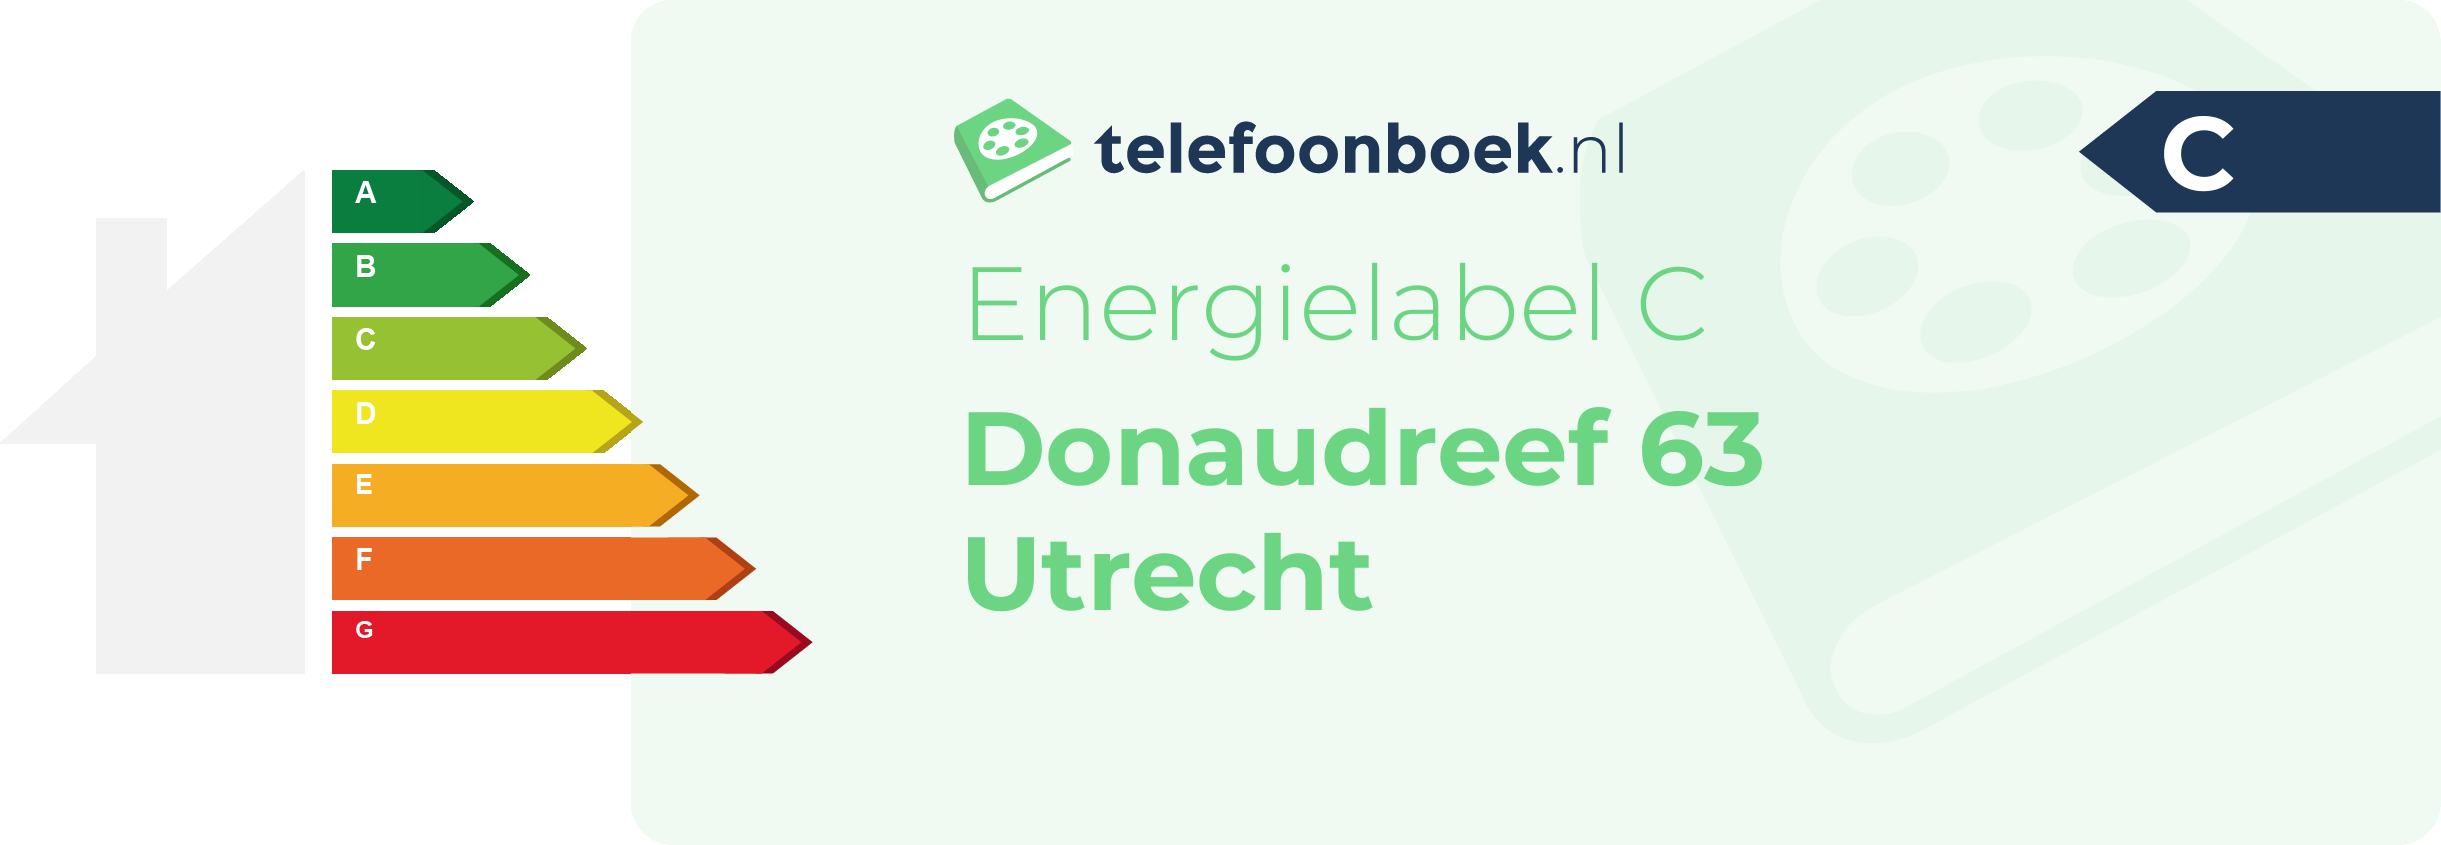 Energielabel Donaudreef 63 Utrecht